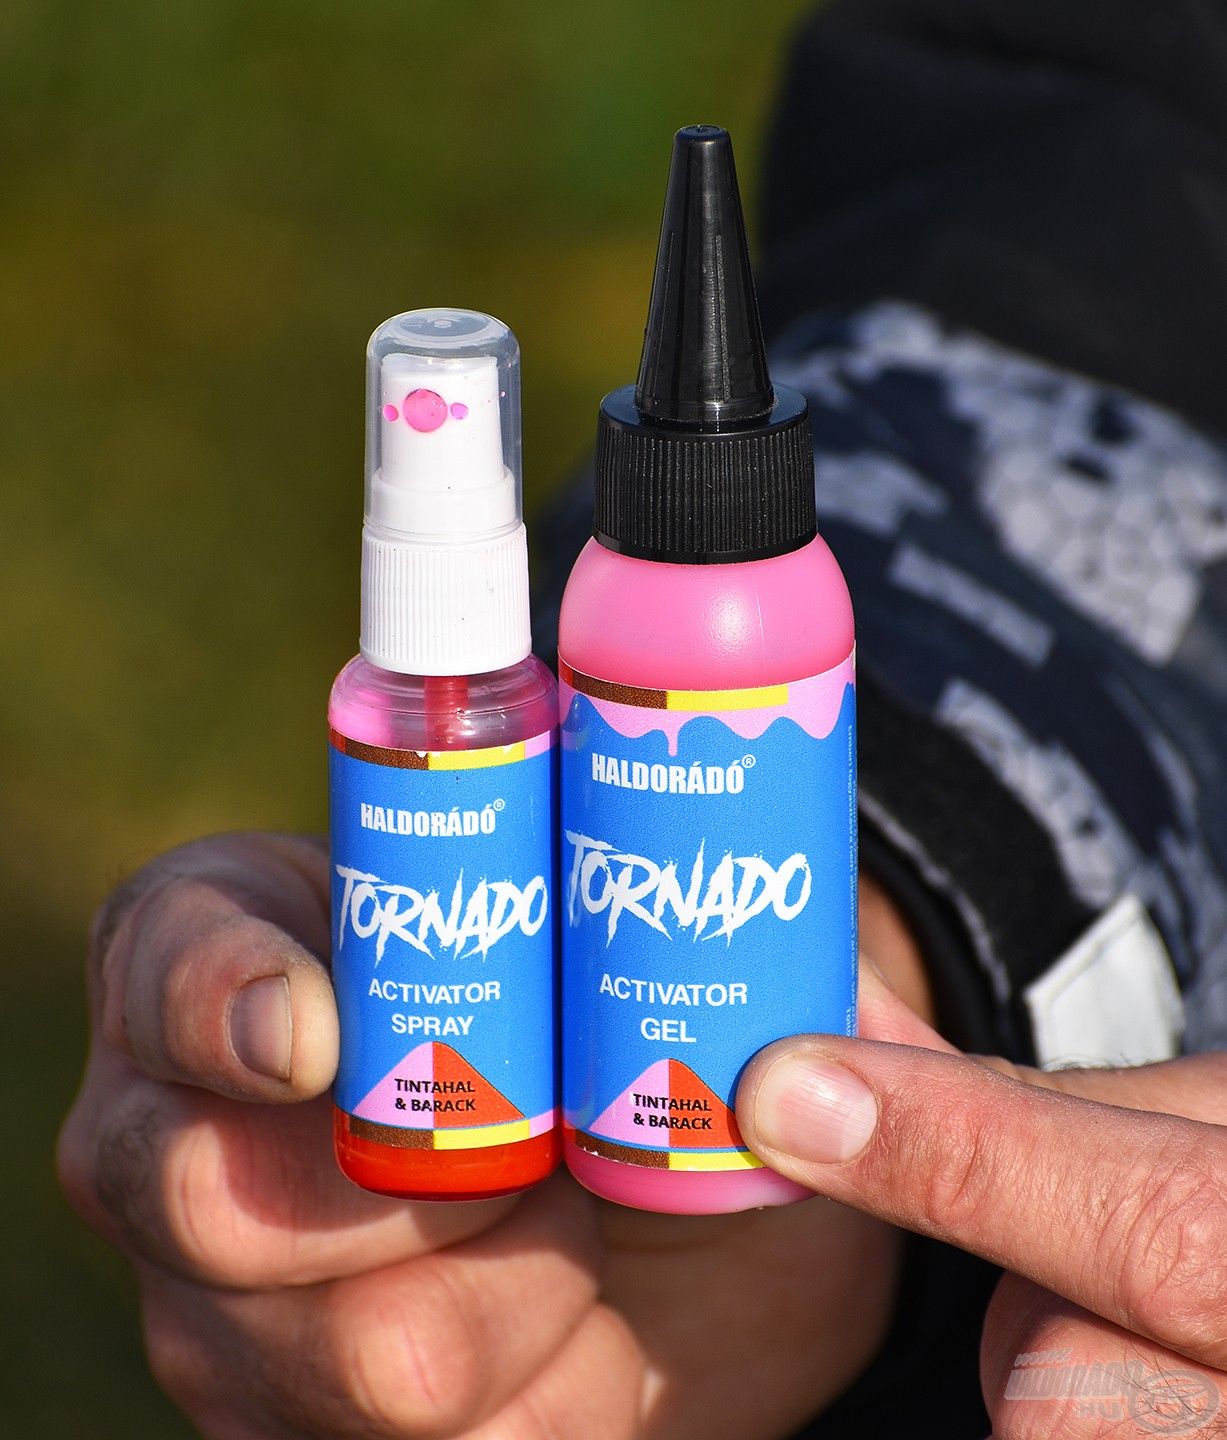 A TORANDO termékcsoport idei újdonsága a Tintahal & Barack, amely fogós aromákban is elérhető